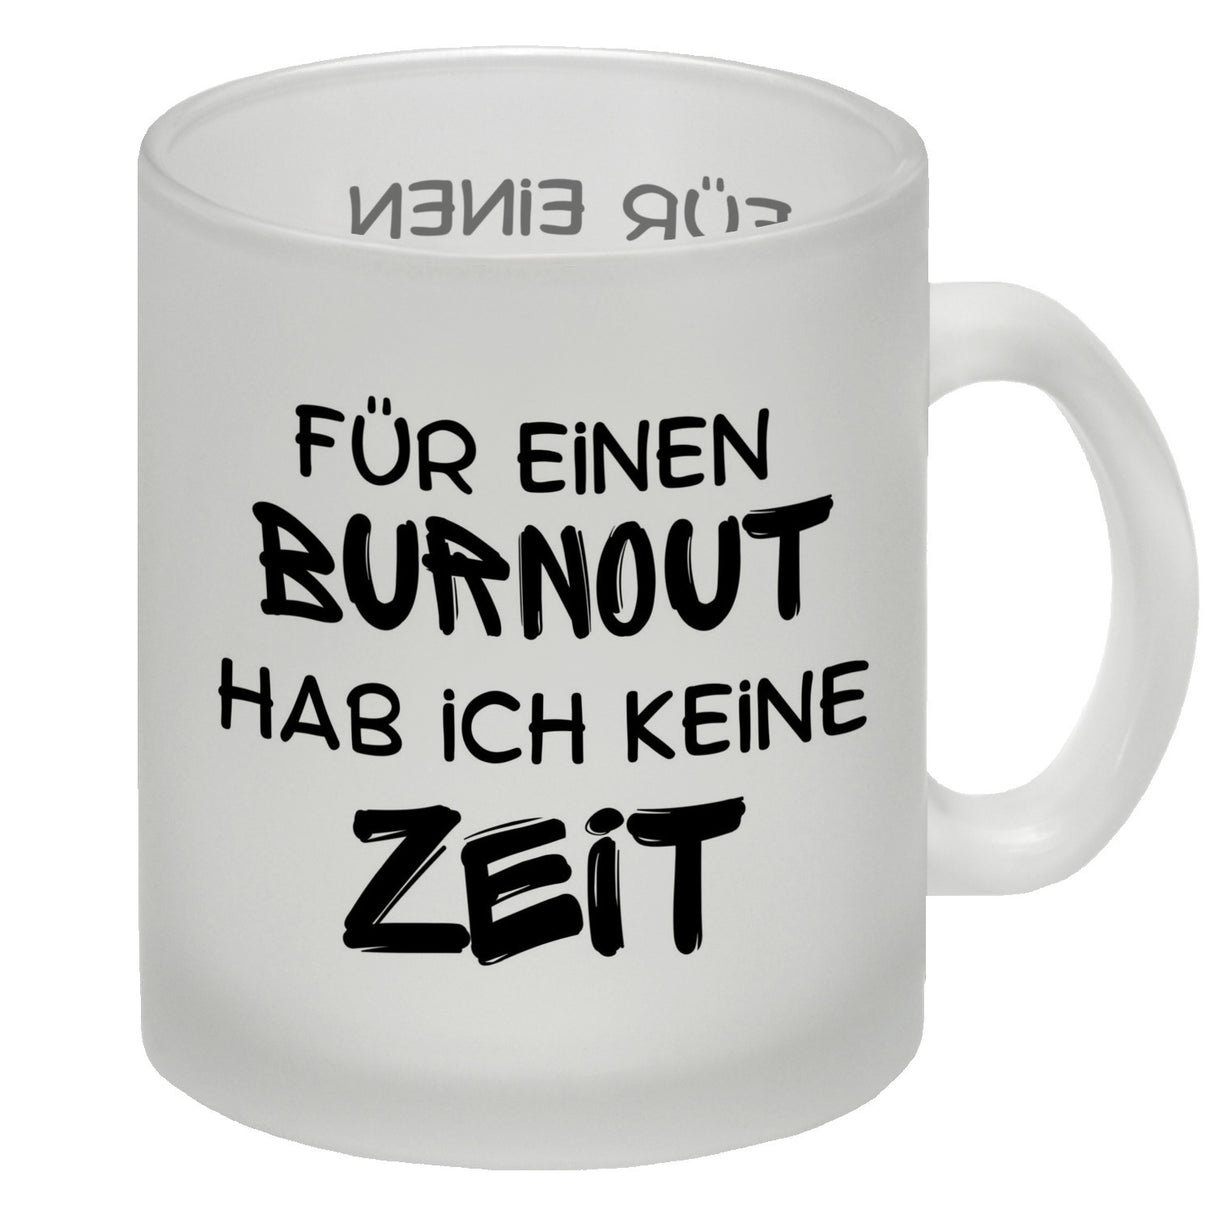 Büro Kaffeebecher mit Spruch Für einen Burnout keine Zeit in bunt